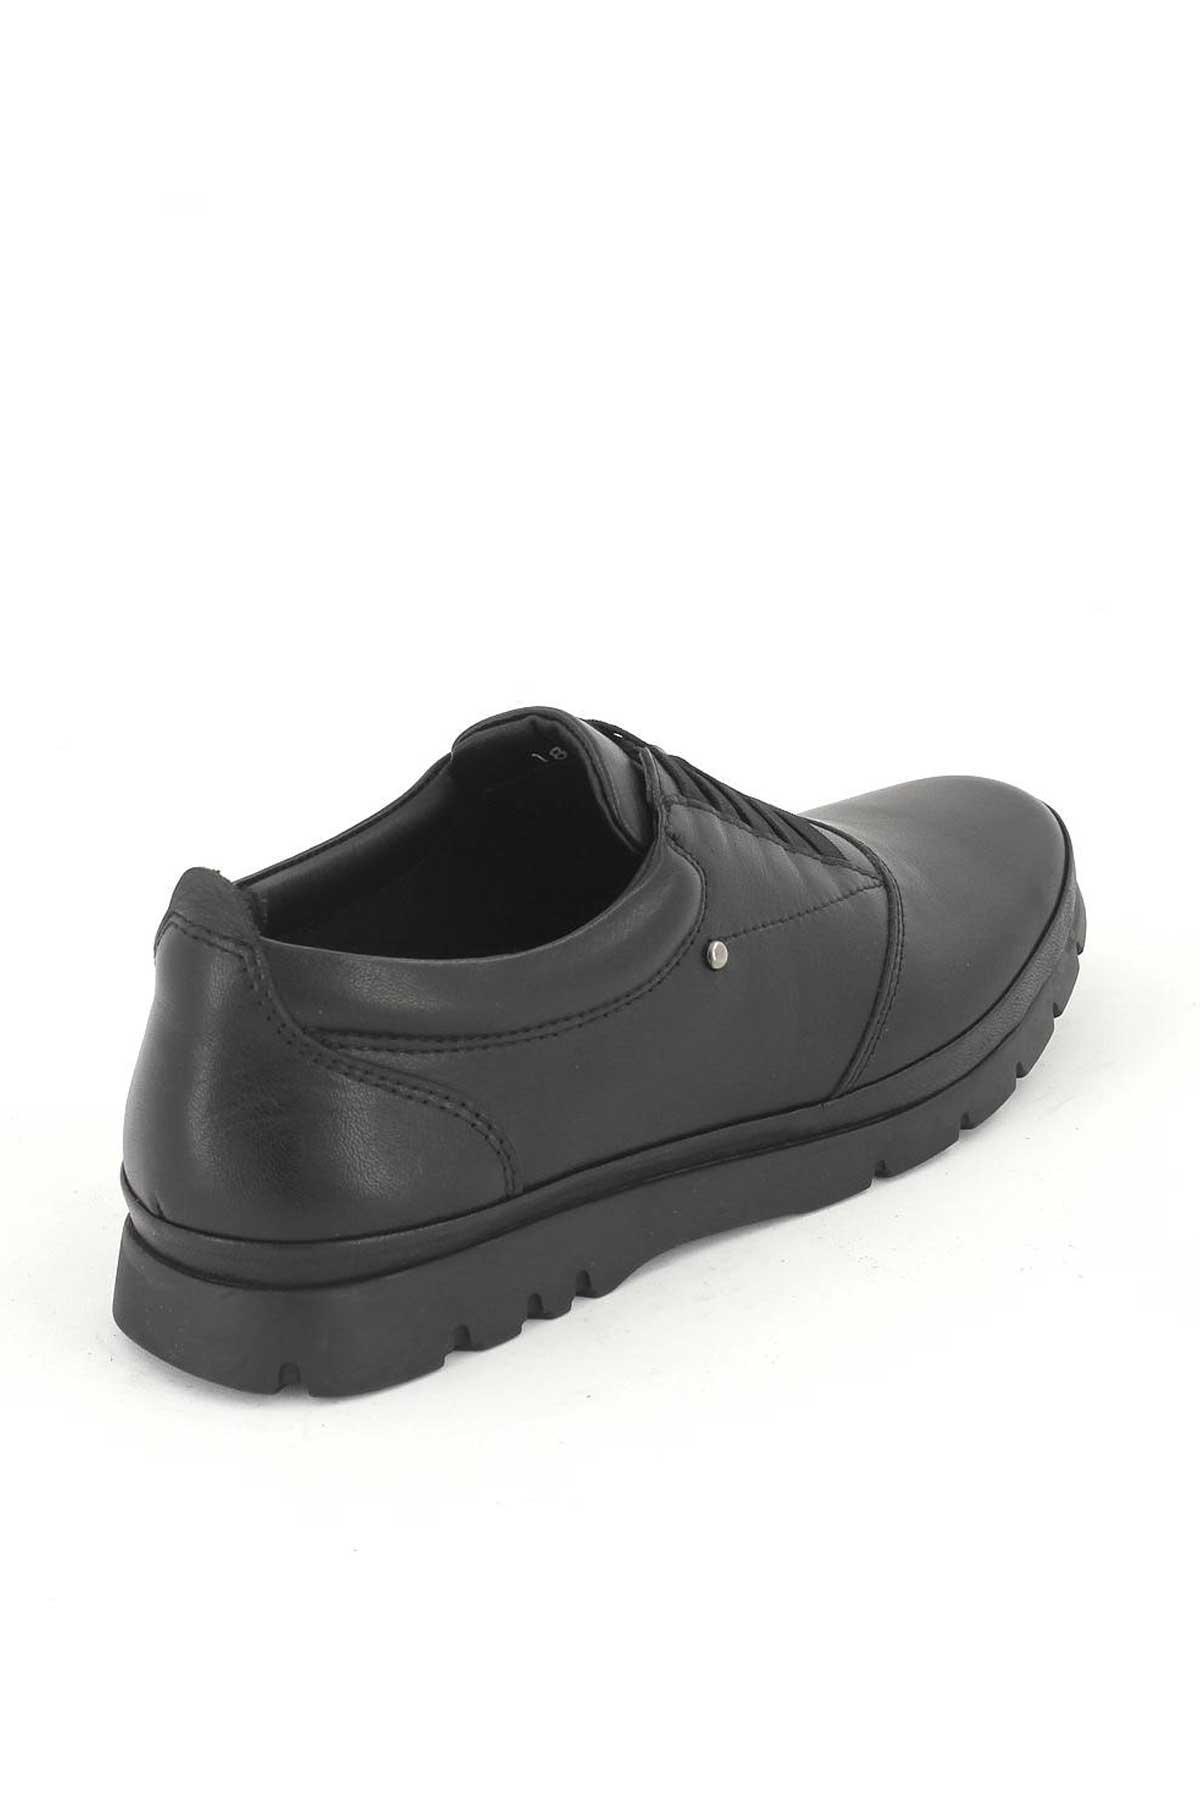 Kadın Comfort Ayakkabı Siyah 1813650K